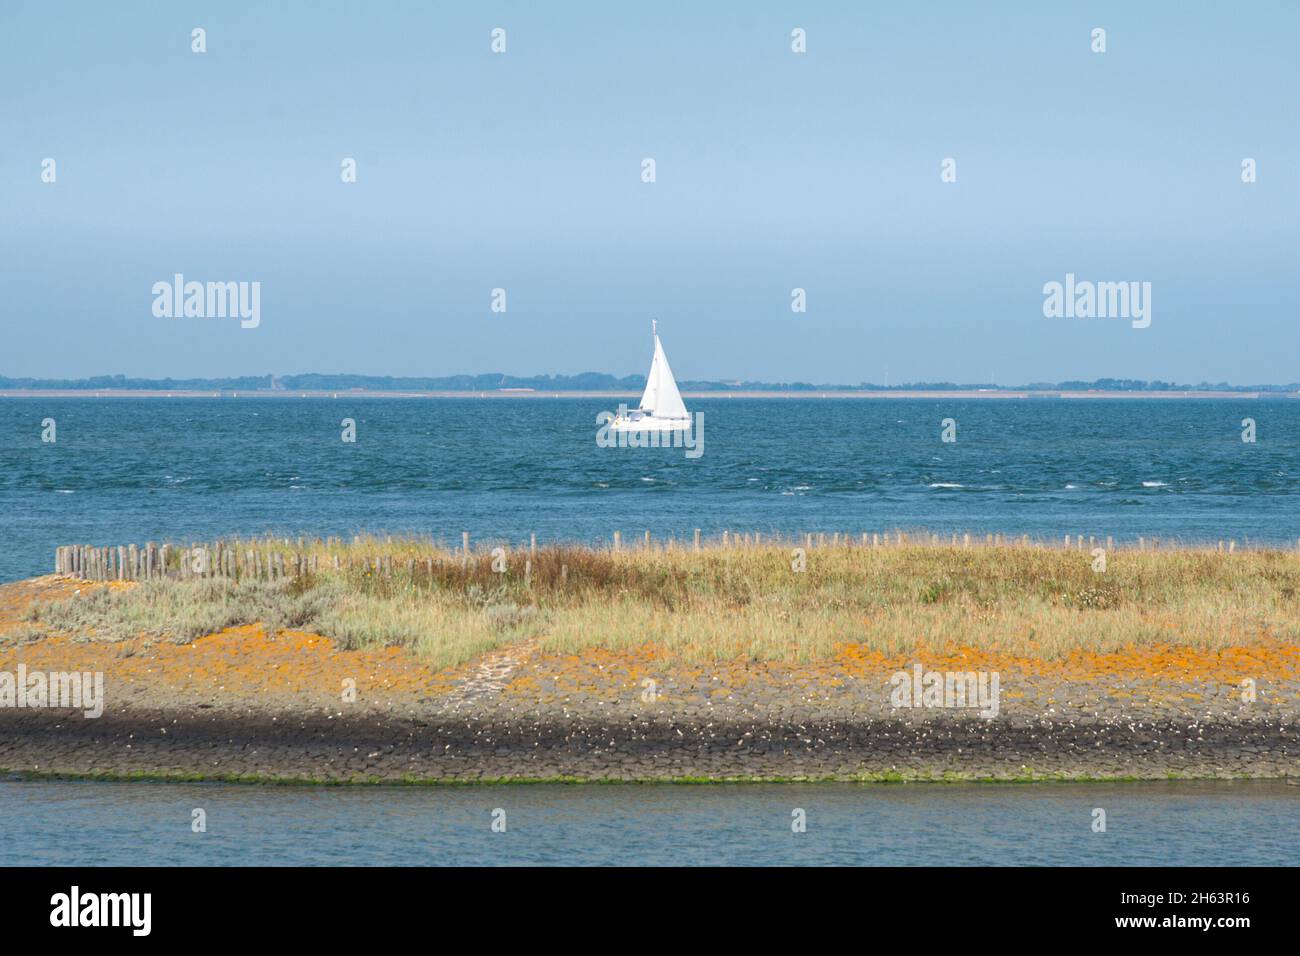 barco de vela individual frente a la línea del horizonte en el mar del norte Foto de stock